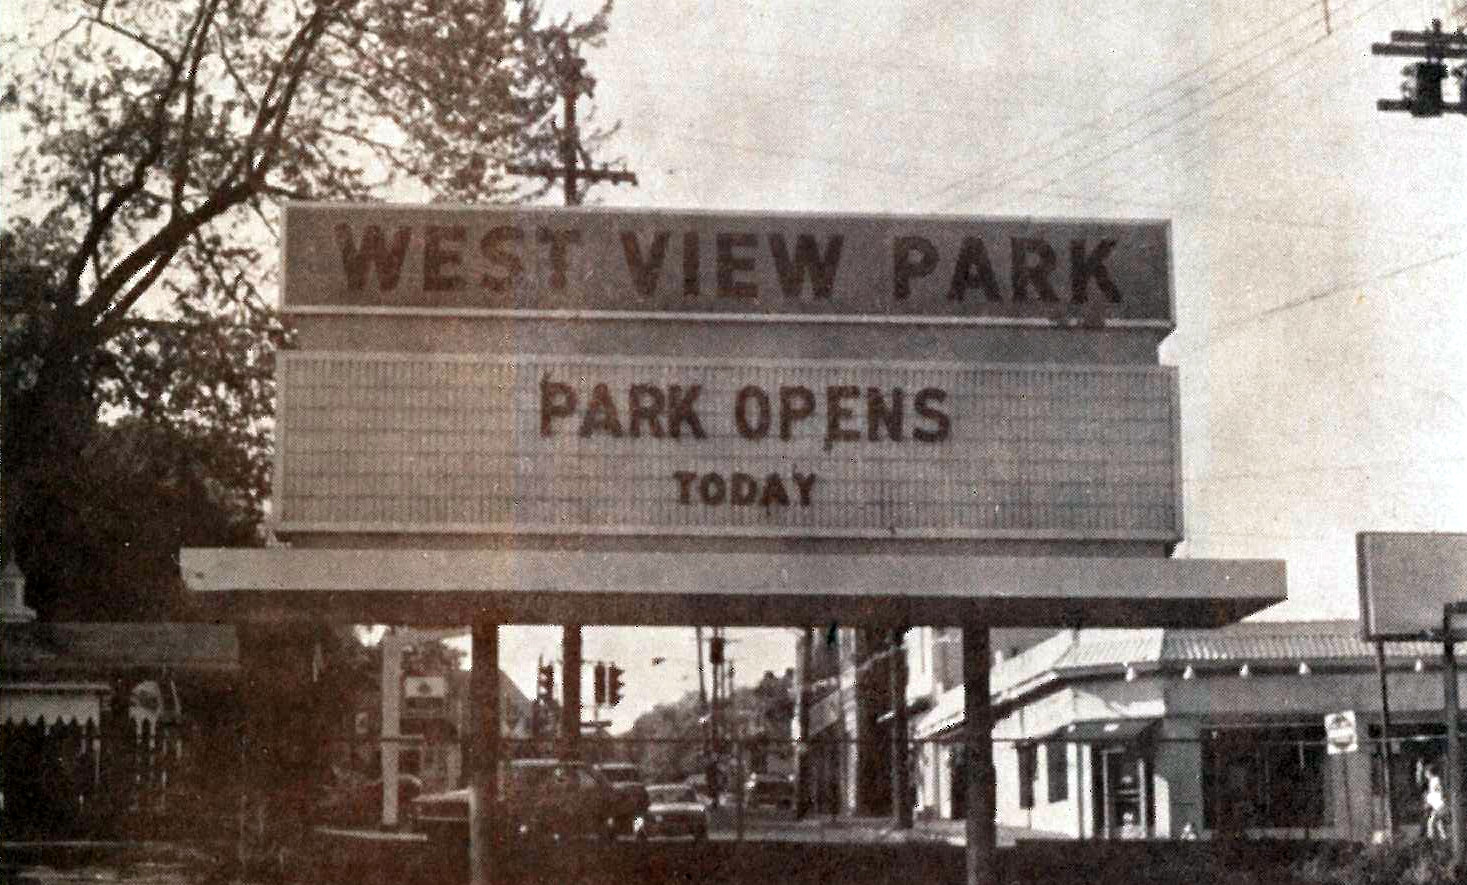 West View Park sign